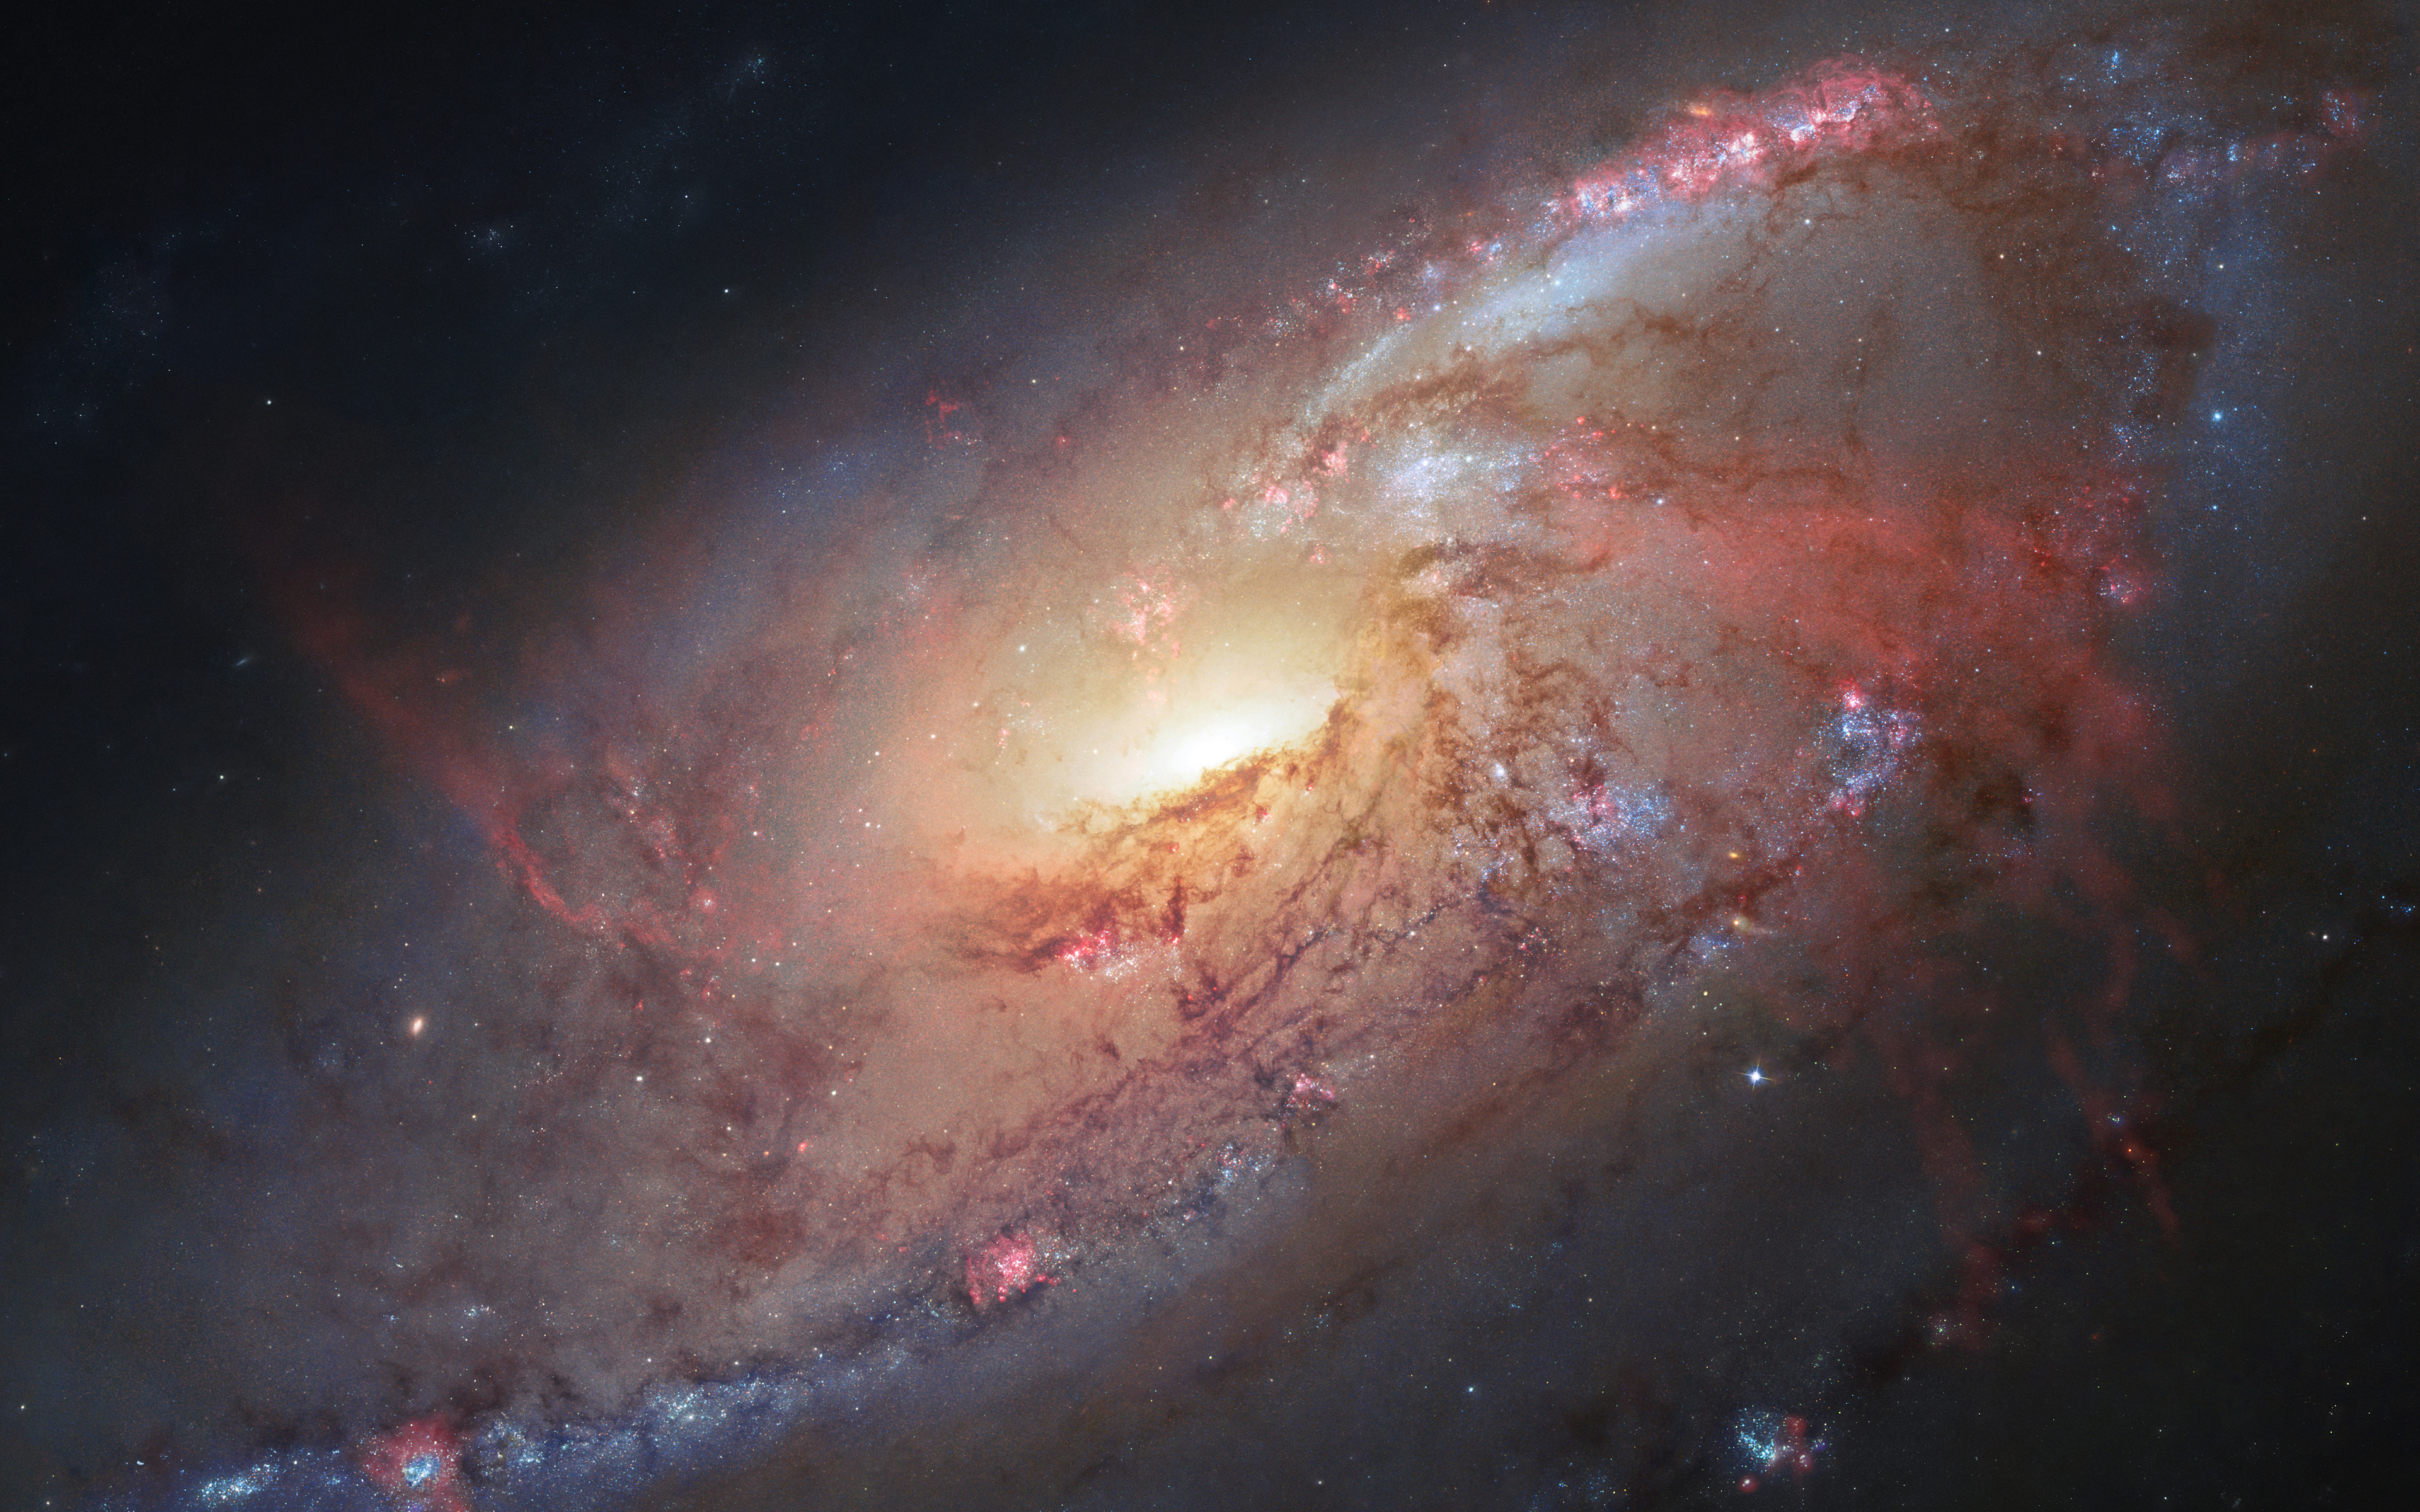 Messier 106 Spiral Galaxy 5K